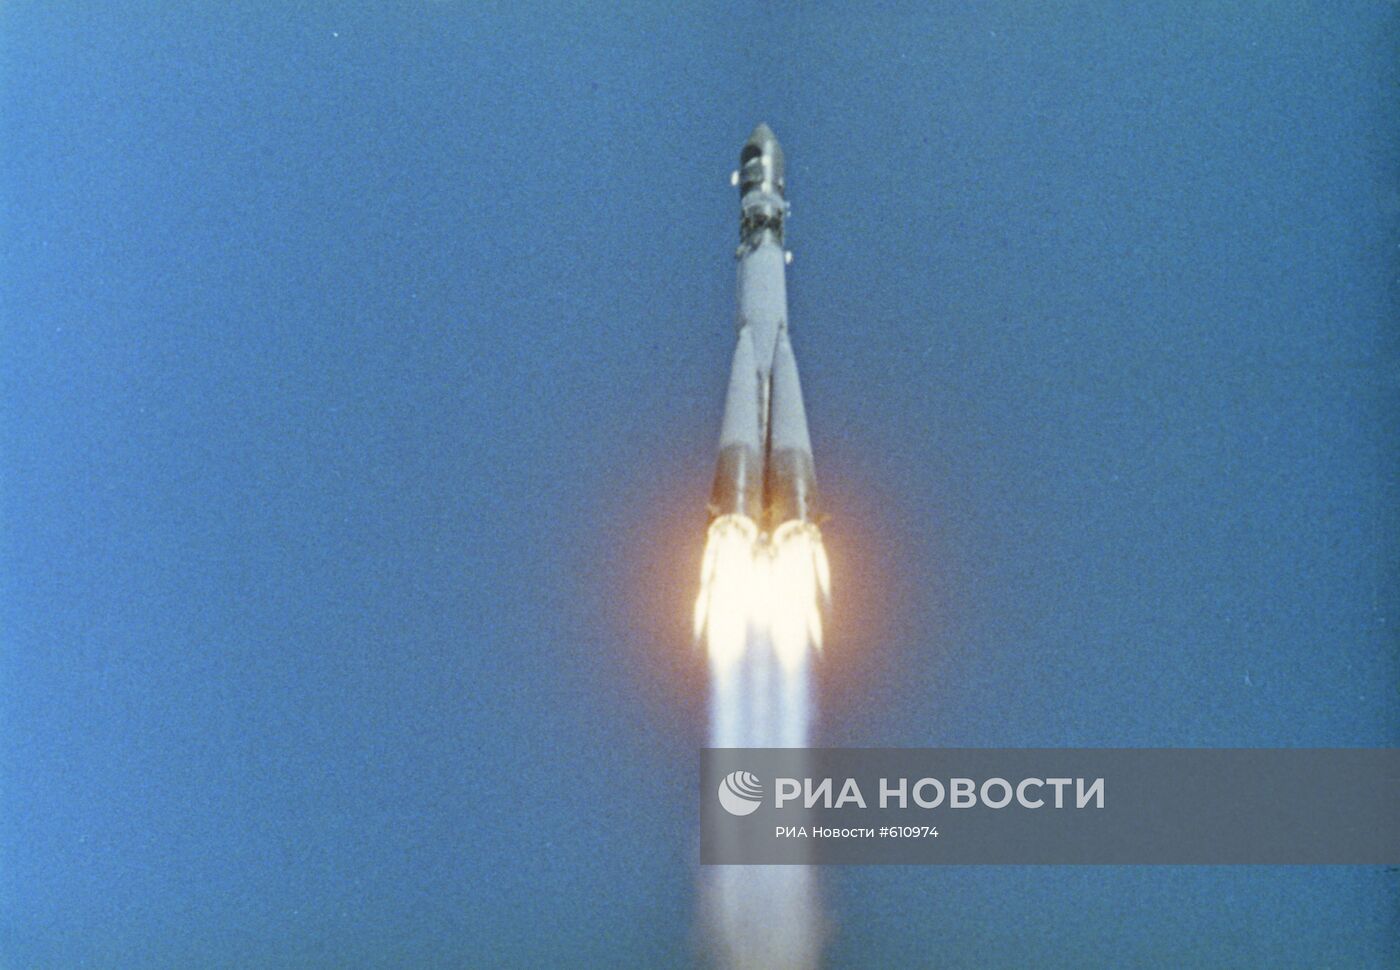 Космический корабль "Восток-1" стартовал с космодрома Байконур